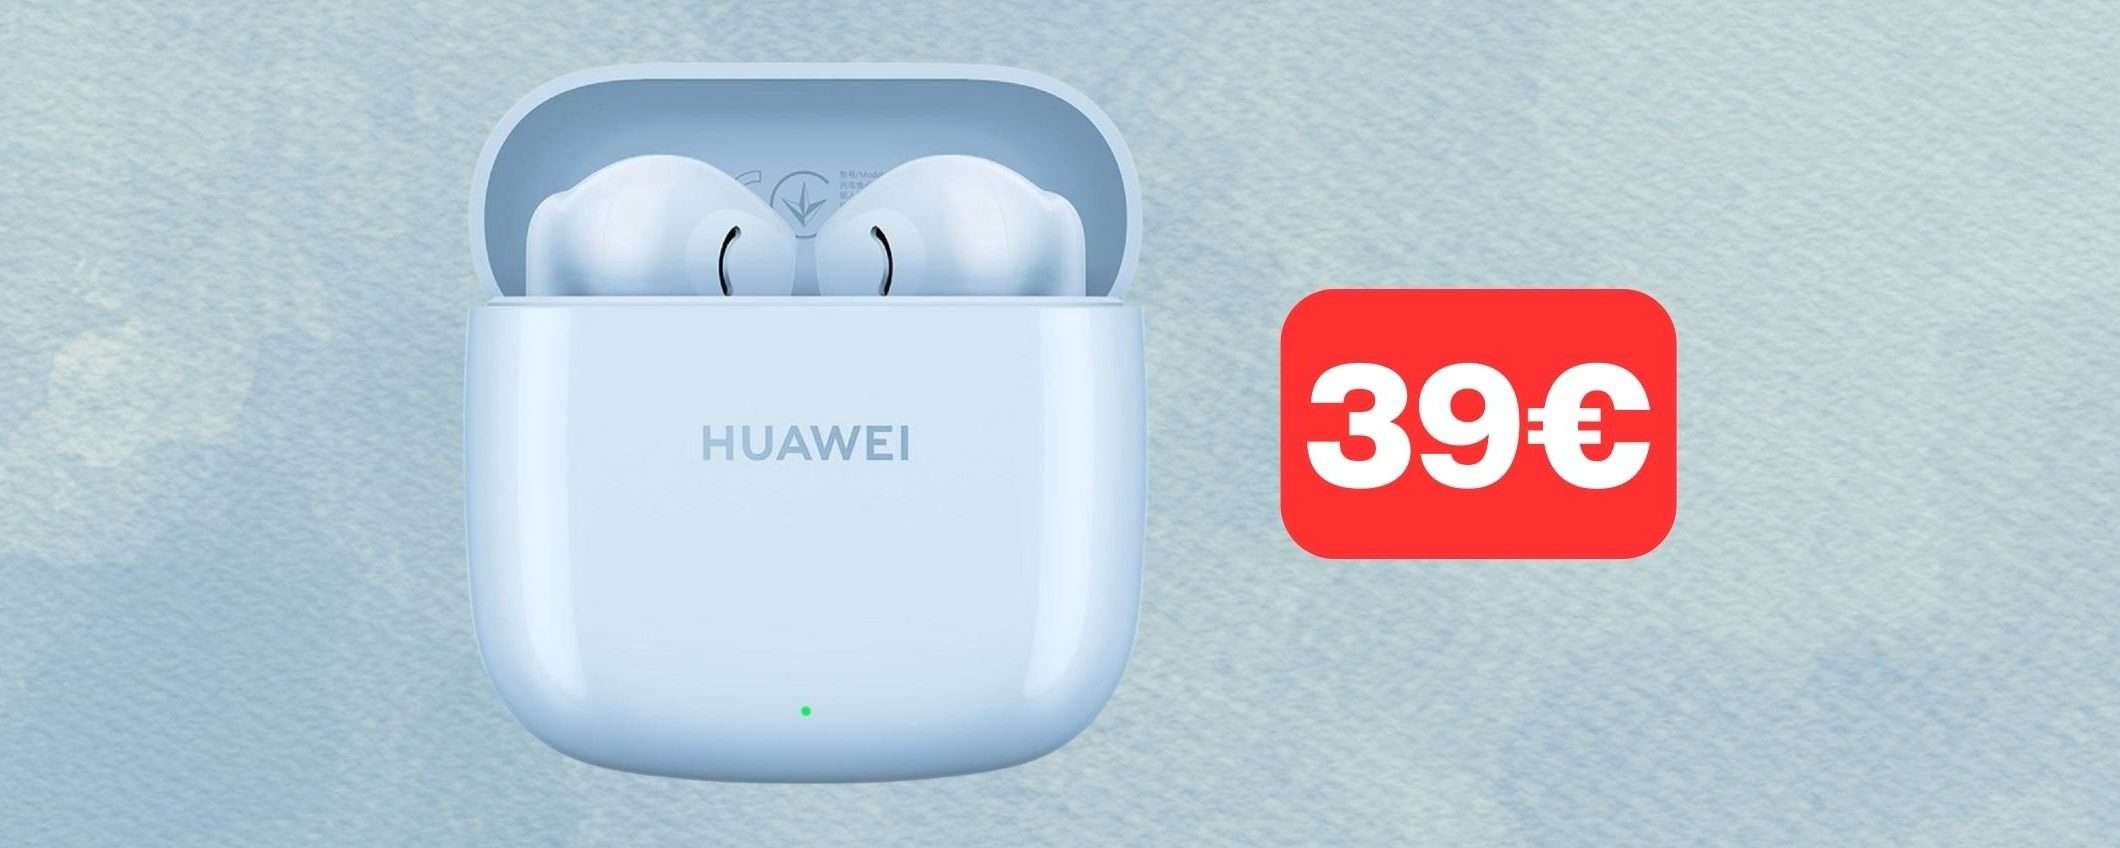 Auricolari Huawei FreeBuds 2 a prezzo STRACCIATO su Amazon (39€)